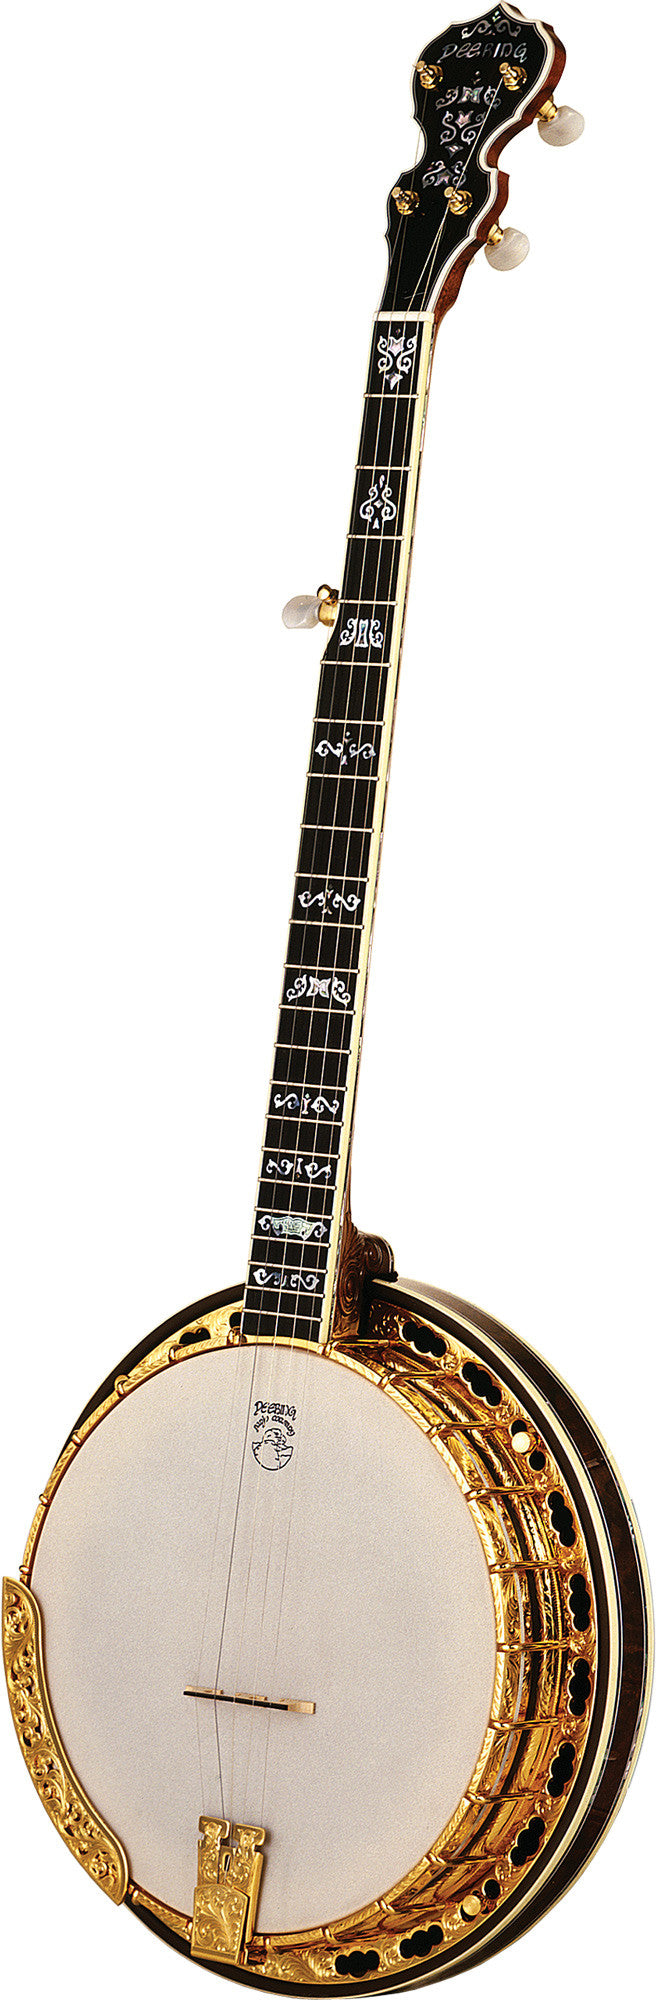 Deering Ivanhoe banjo